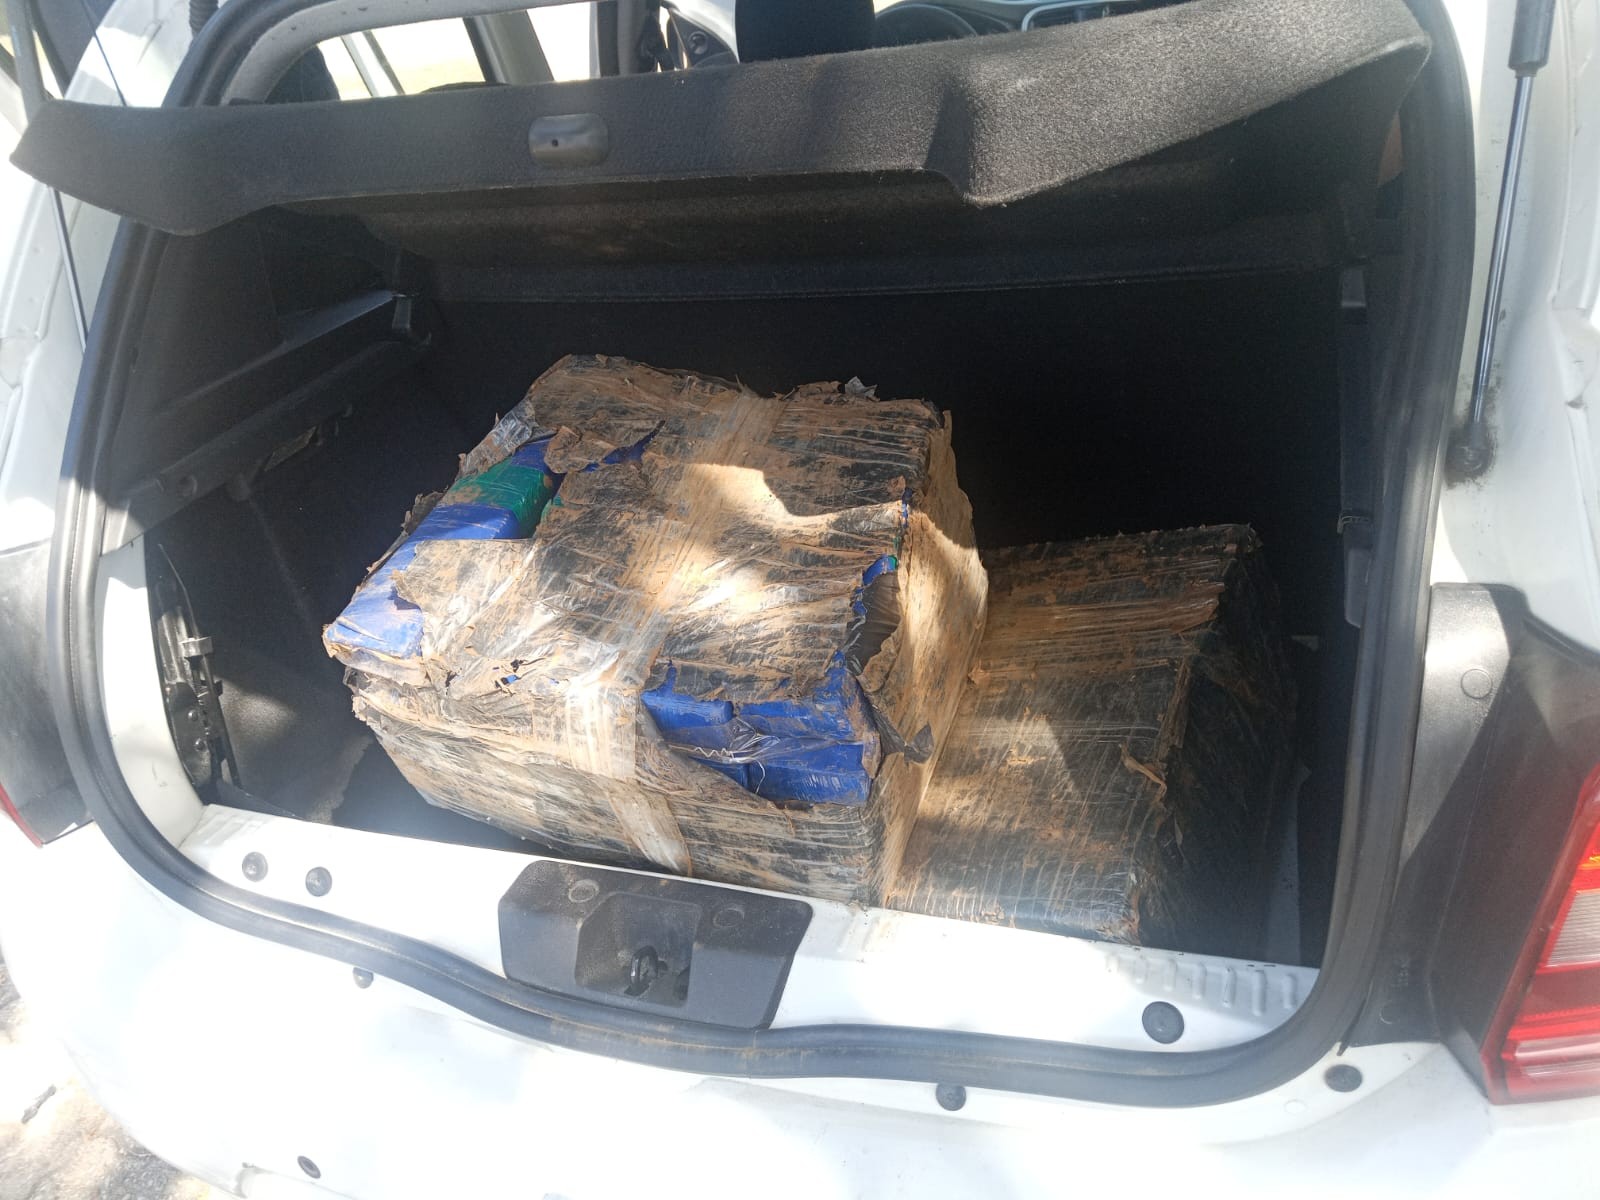 Homem é preso com mais de 100 quilos de maconha no porta-malas do carro na Dutra